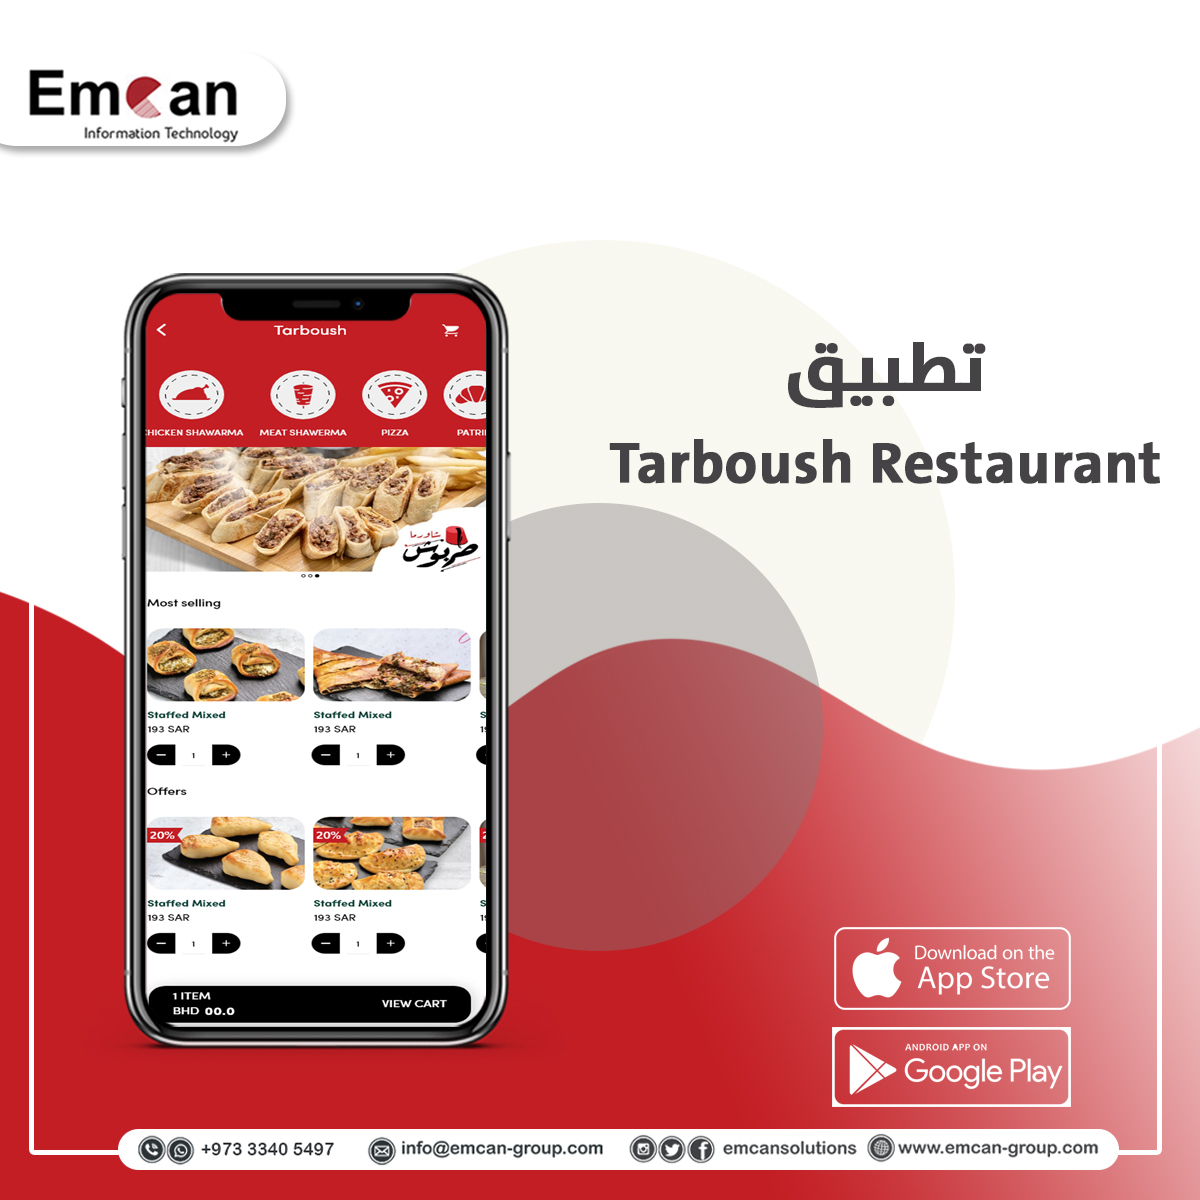 Tarboush Restaurant